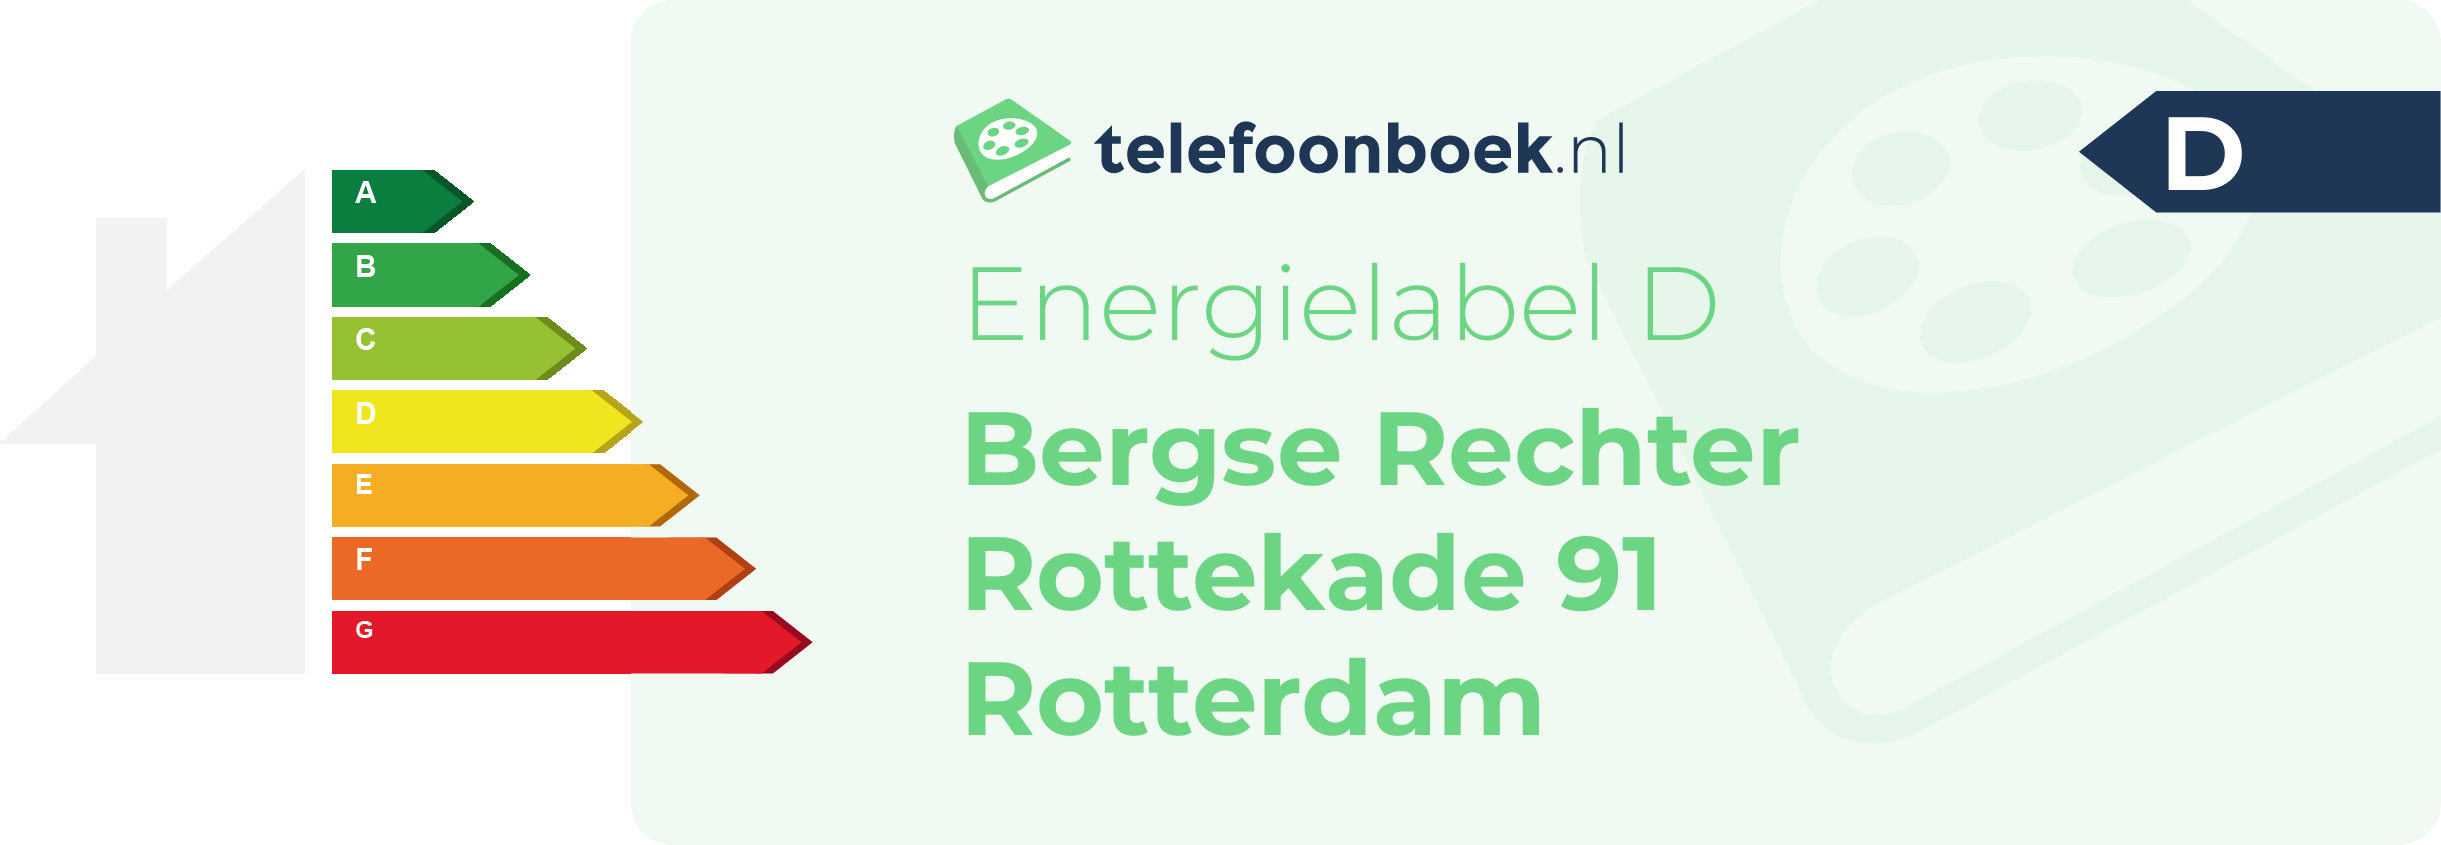 Energielabel Bergse Rechter Rottekade 91 Rotterdam